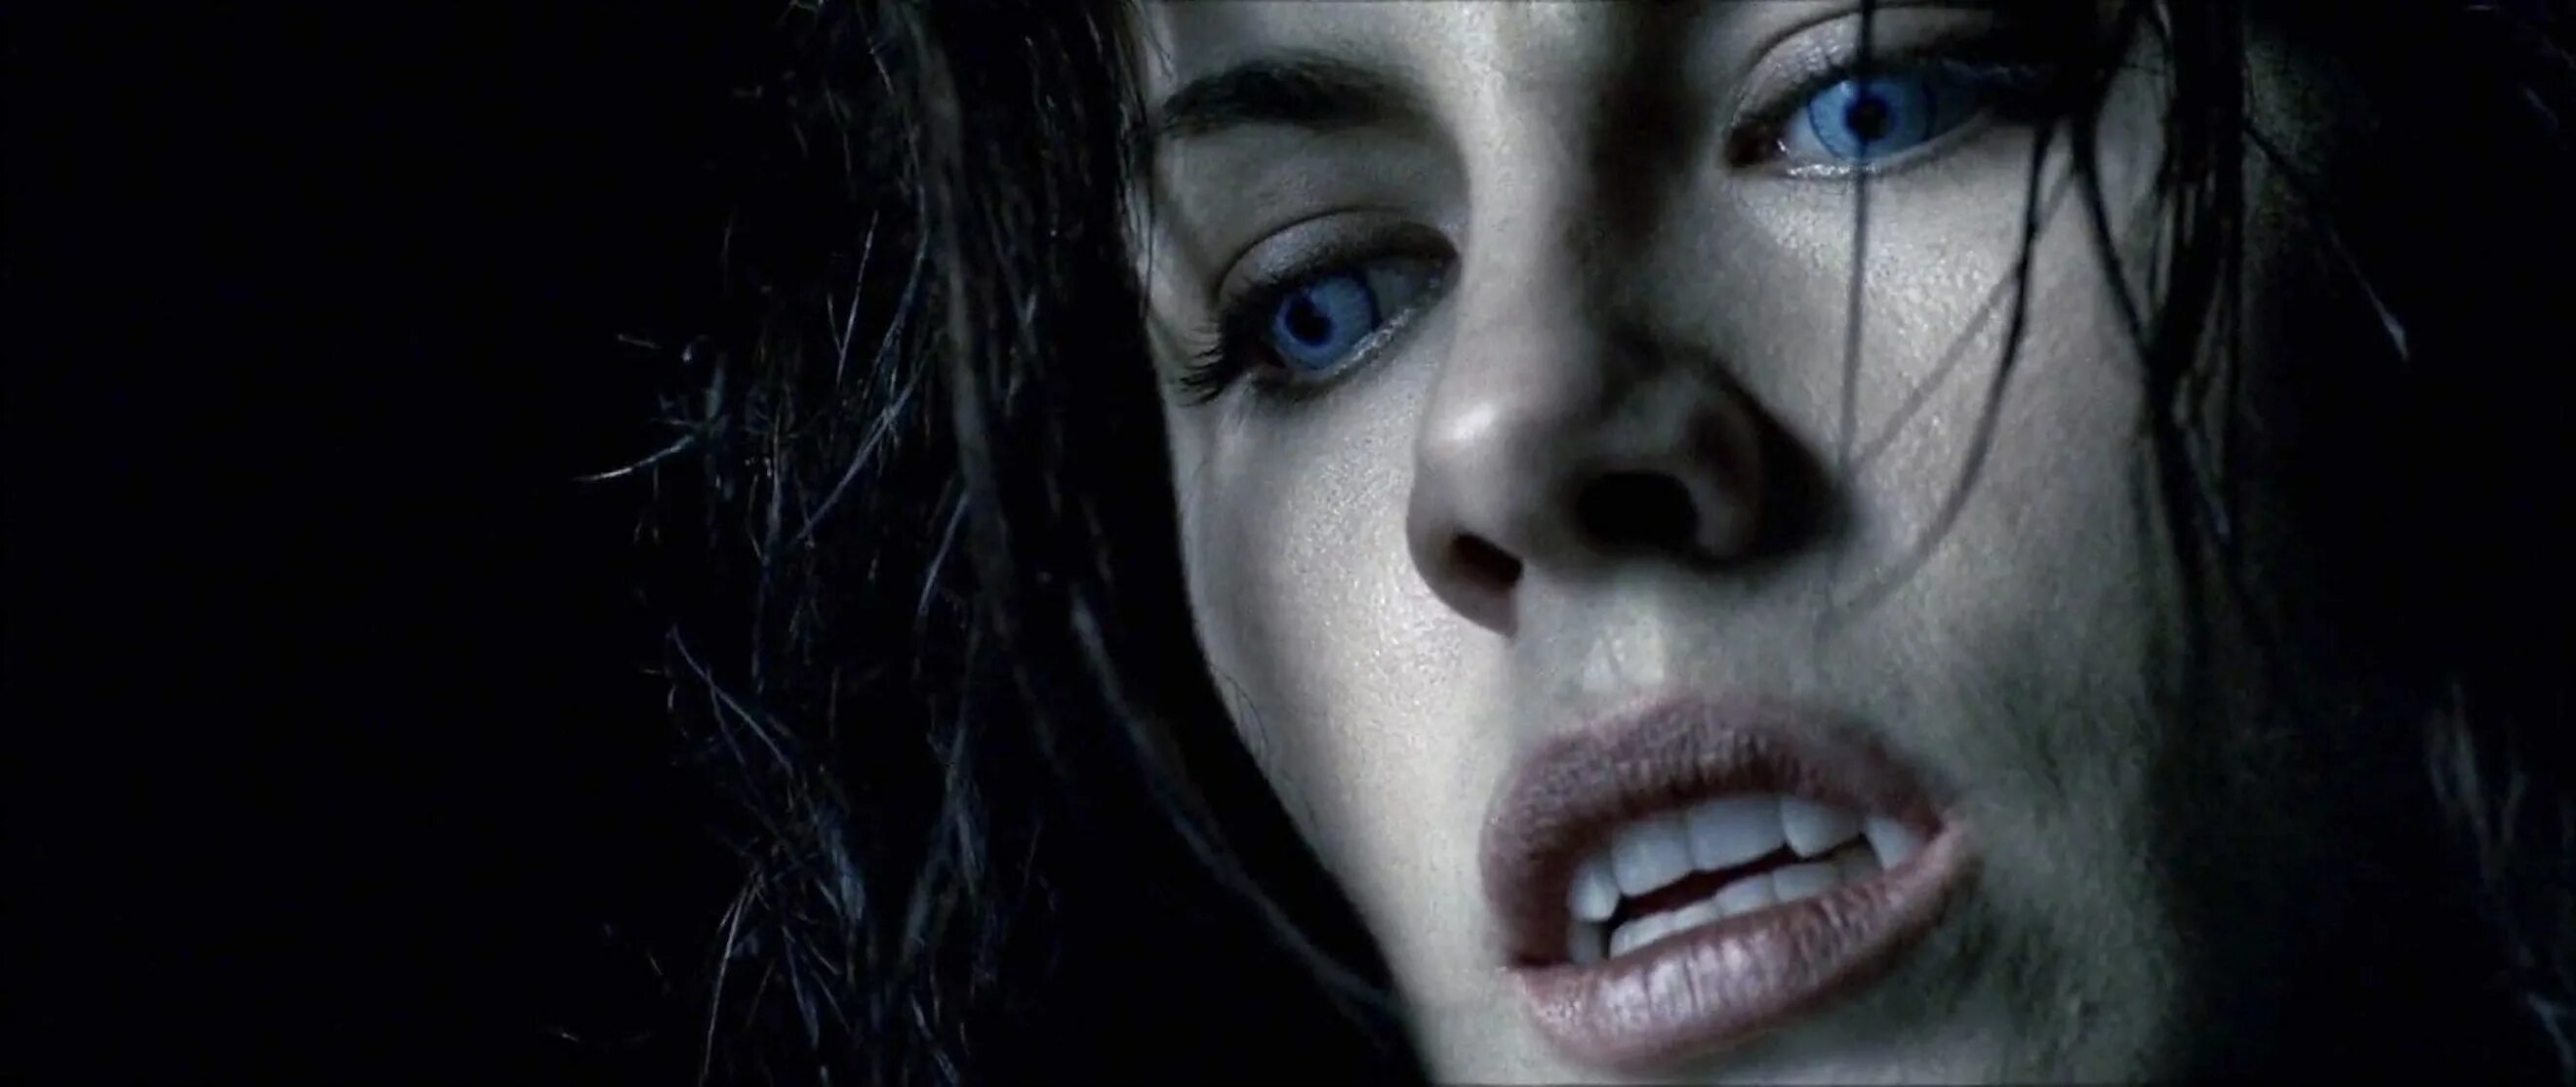 Кейт Бекинсейл другой мир 2003. Кейт Бекинсейл вампир. Другой мир / Underworld (2003). Другой мир 2003 Селин.